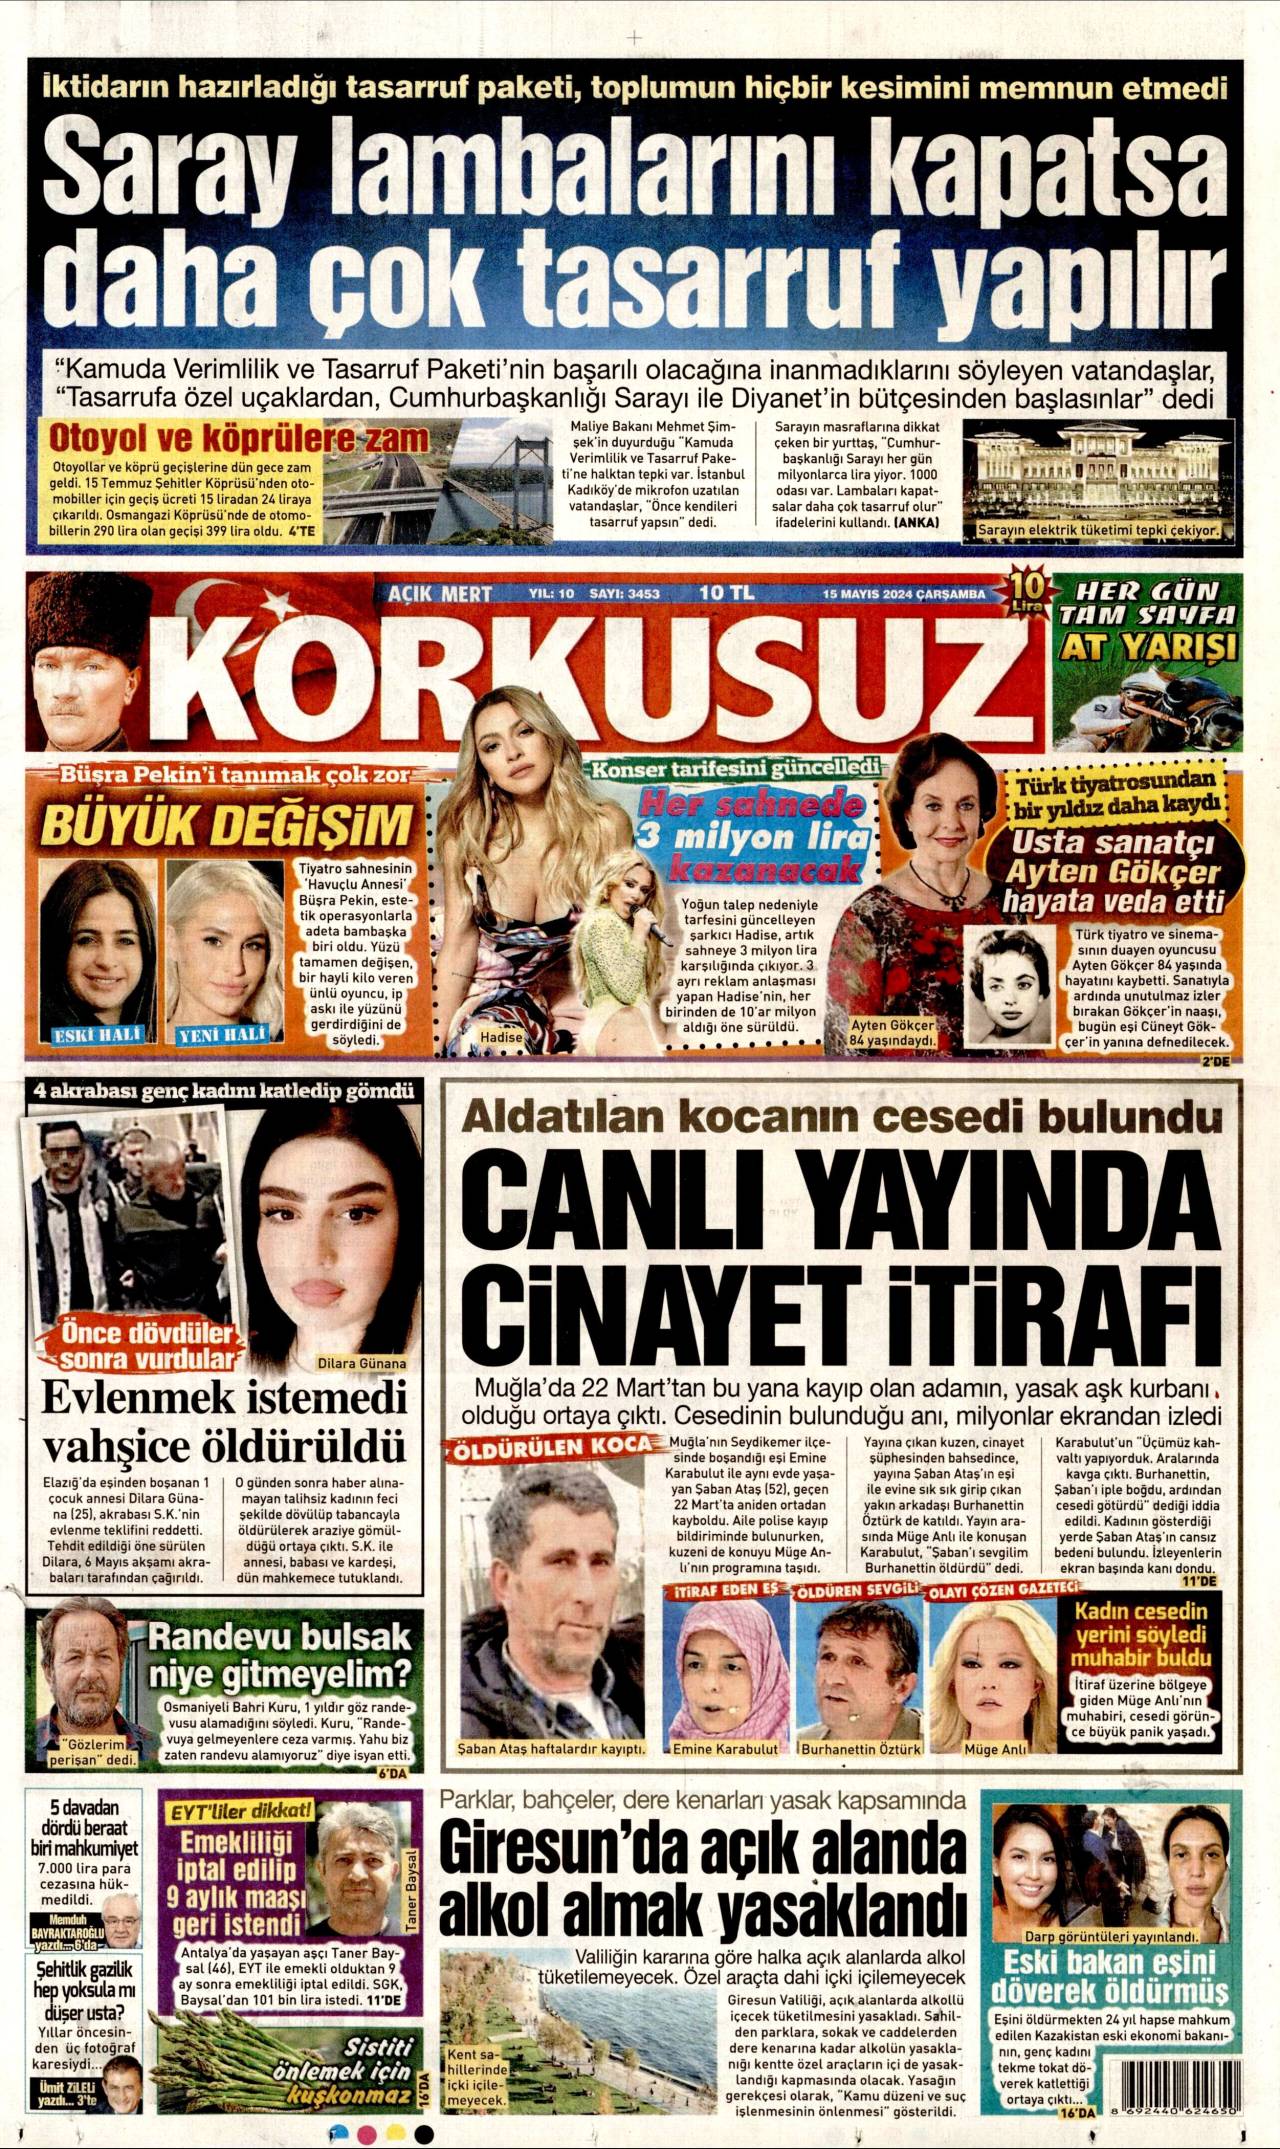 Korkusuz Newspaper